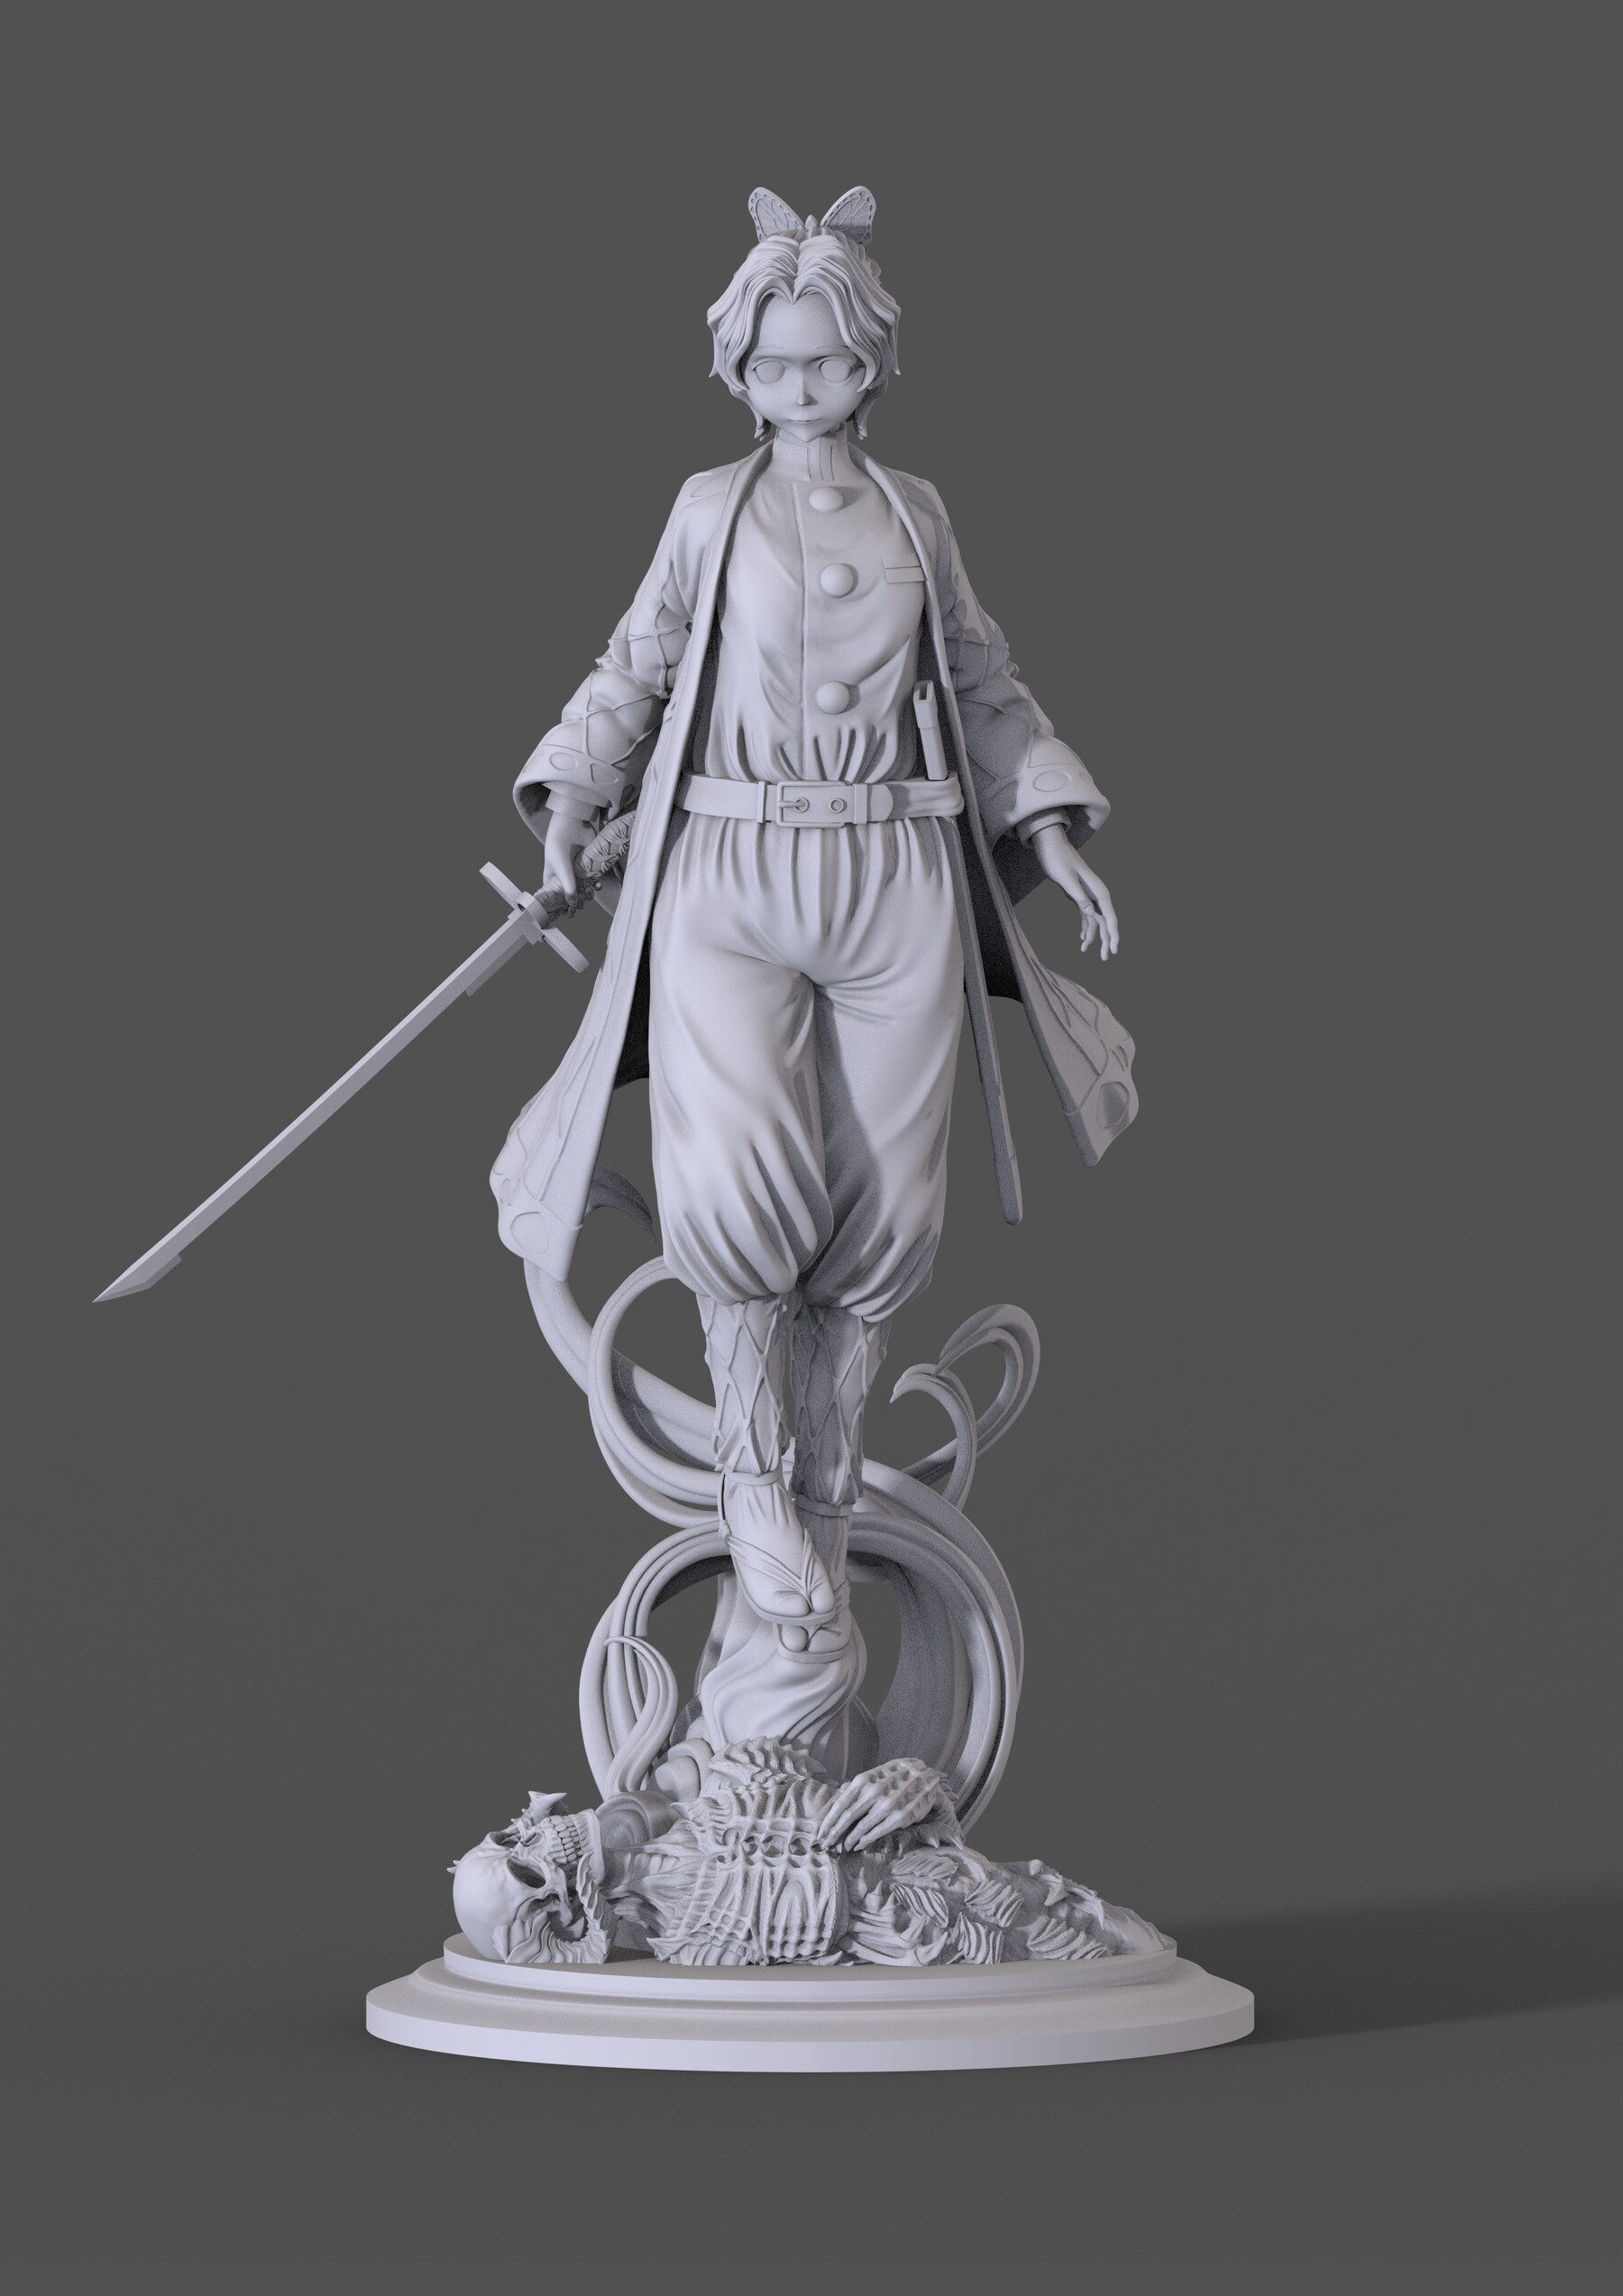 ArtStation - 3D Game Assets 3D Printed Models character Figures | Game ...